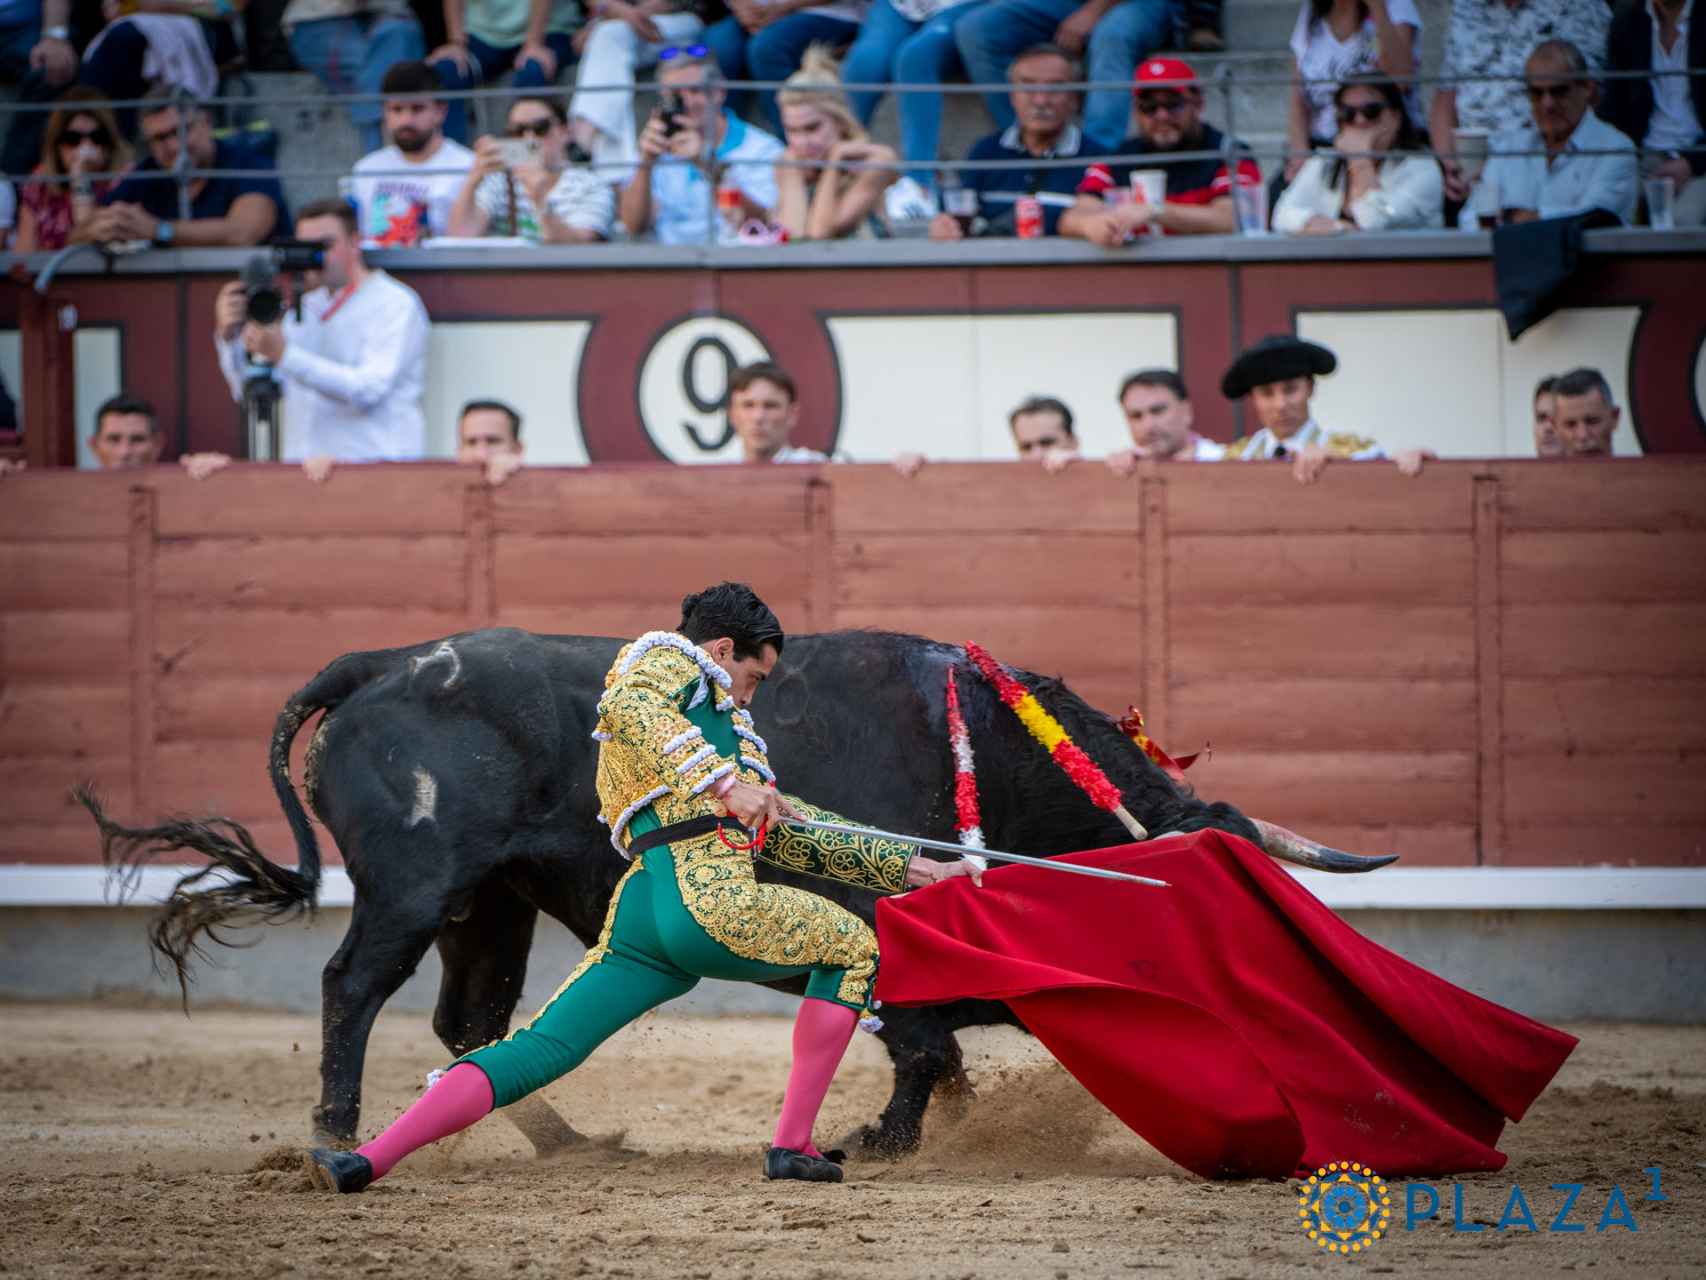 Las mejores imágenes del vallisoletano Mario Navas en la novillada de este fin de semana en Las Ventas